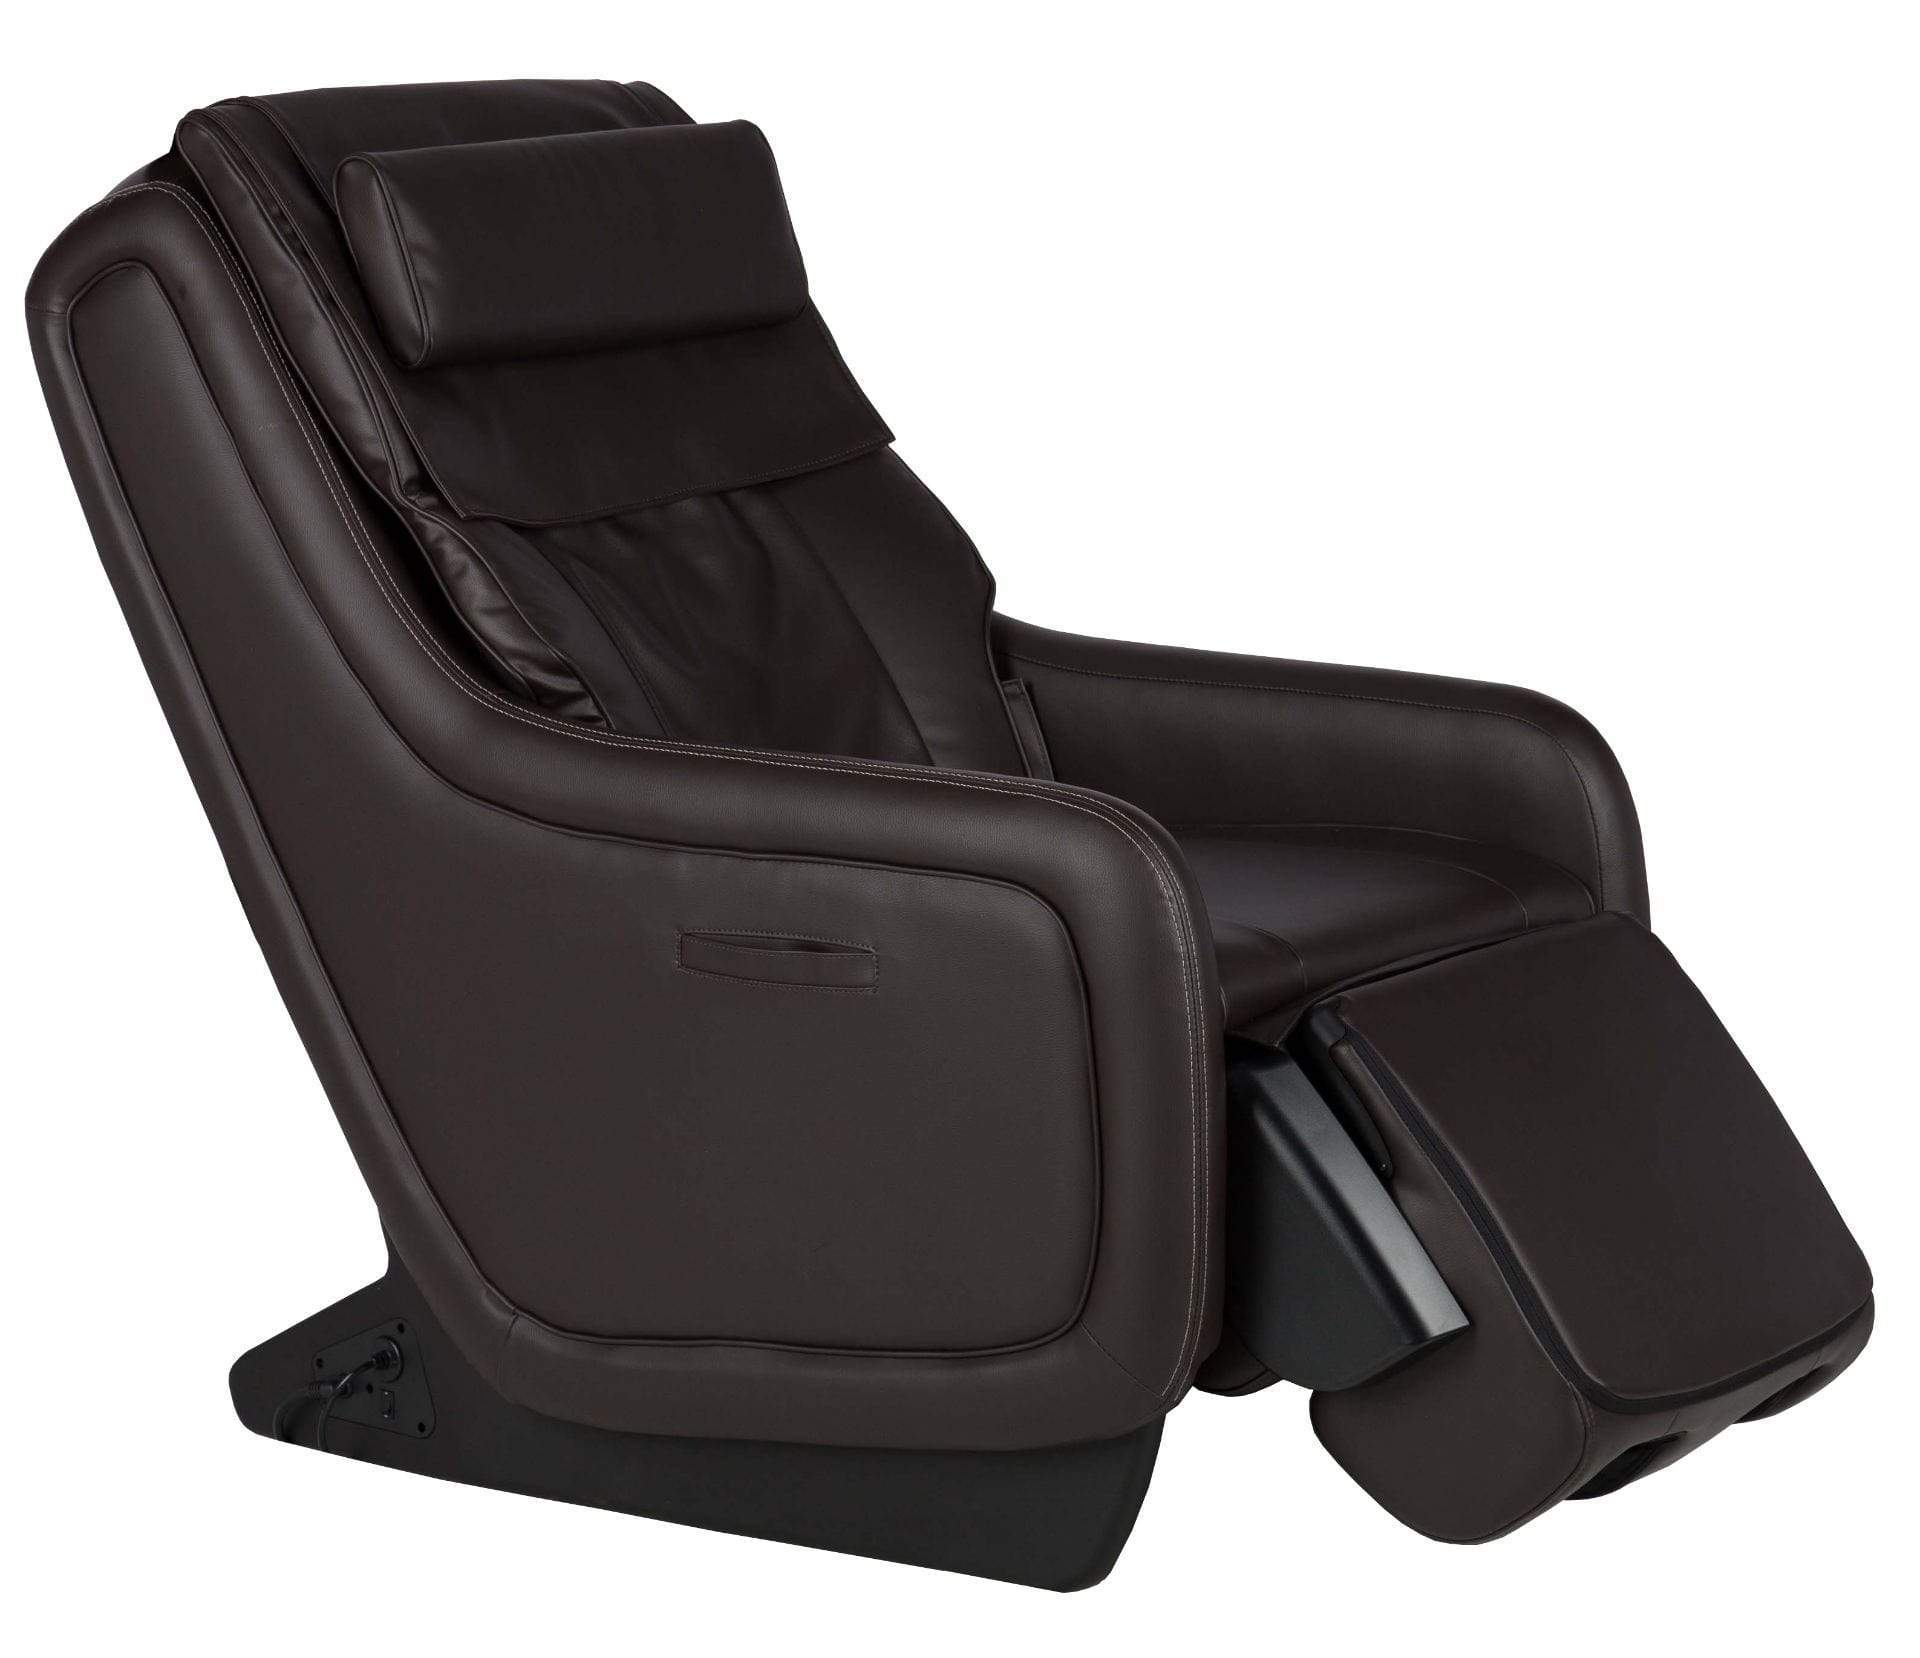 Human TouchMassage ChairHuman Touch ZeroG 5.0 Massage ChairEspressoMassage Chair Heaven